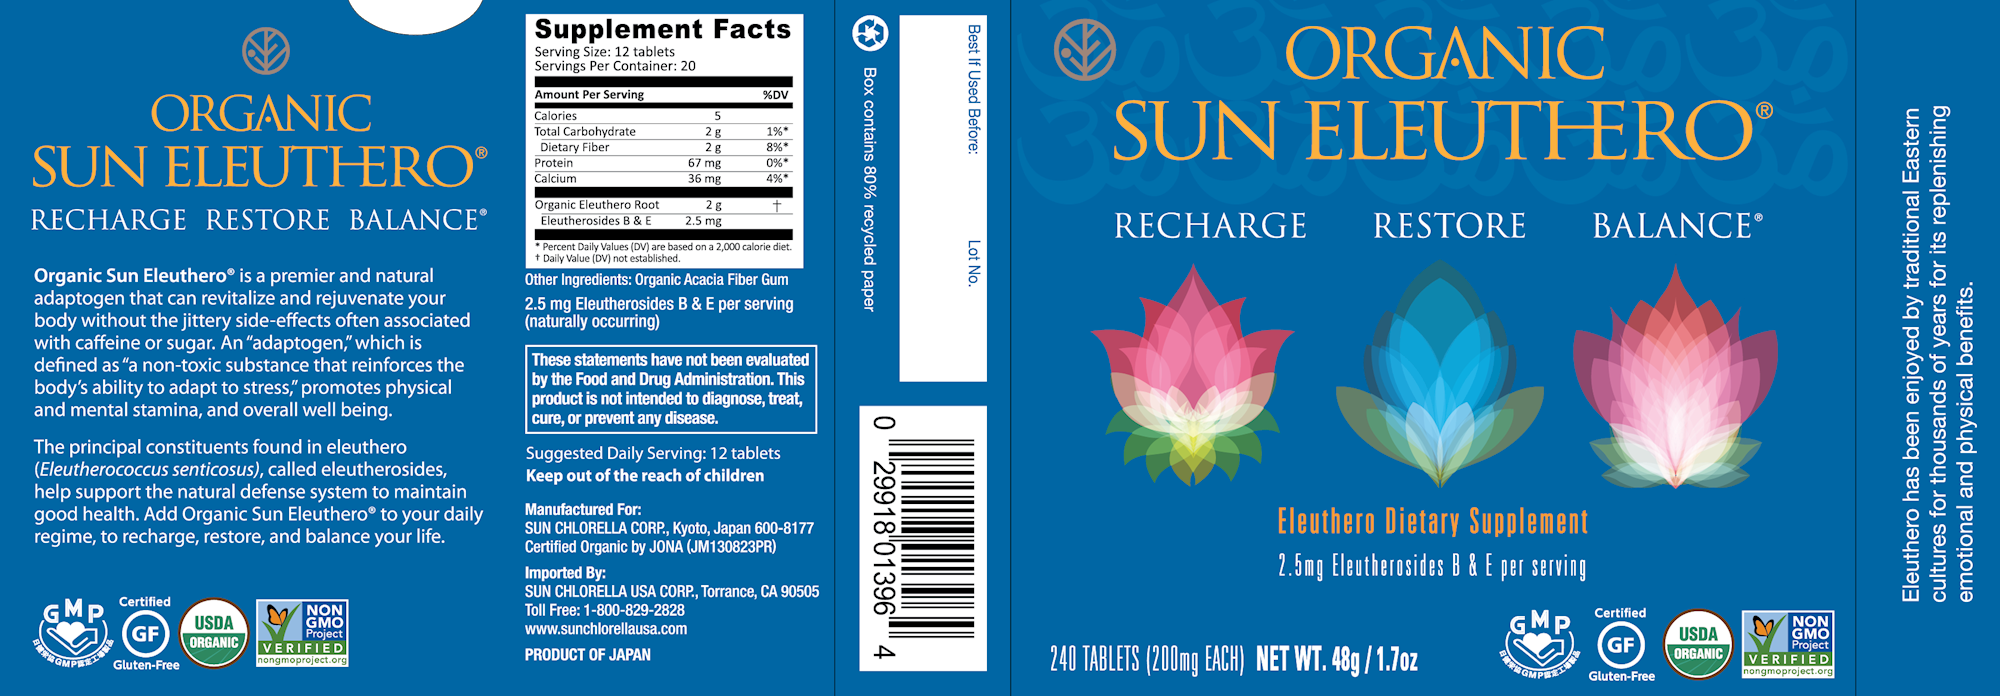 Organic Sun Eleuthero